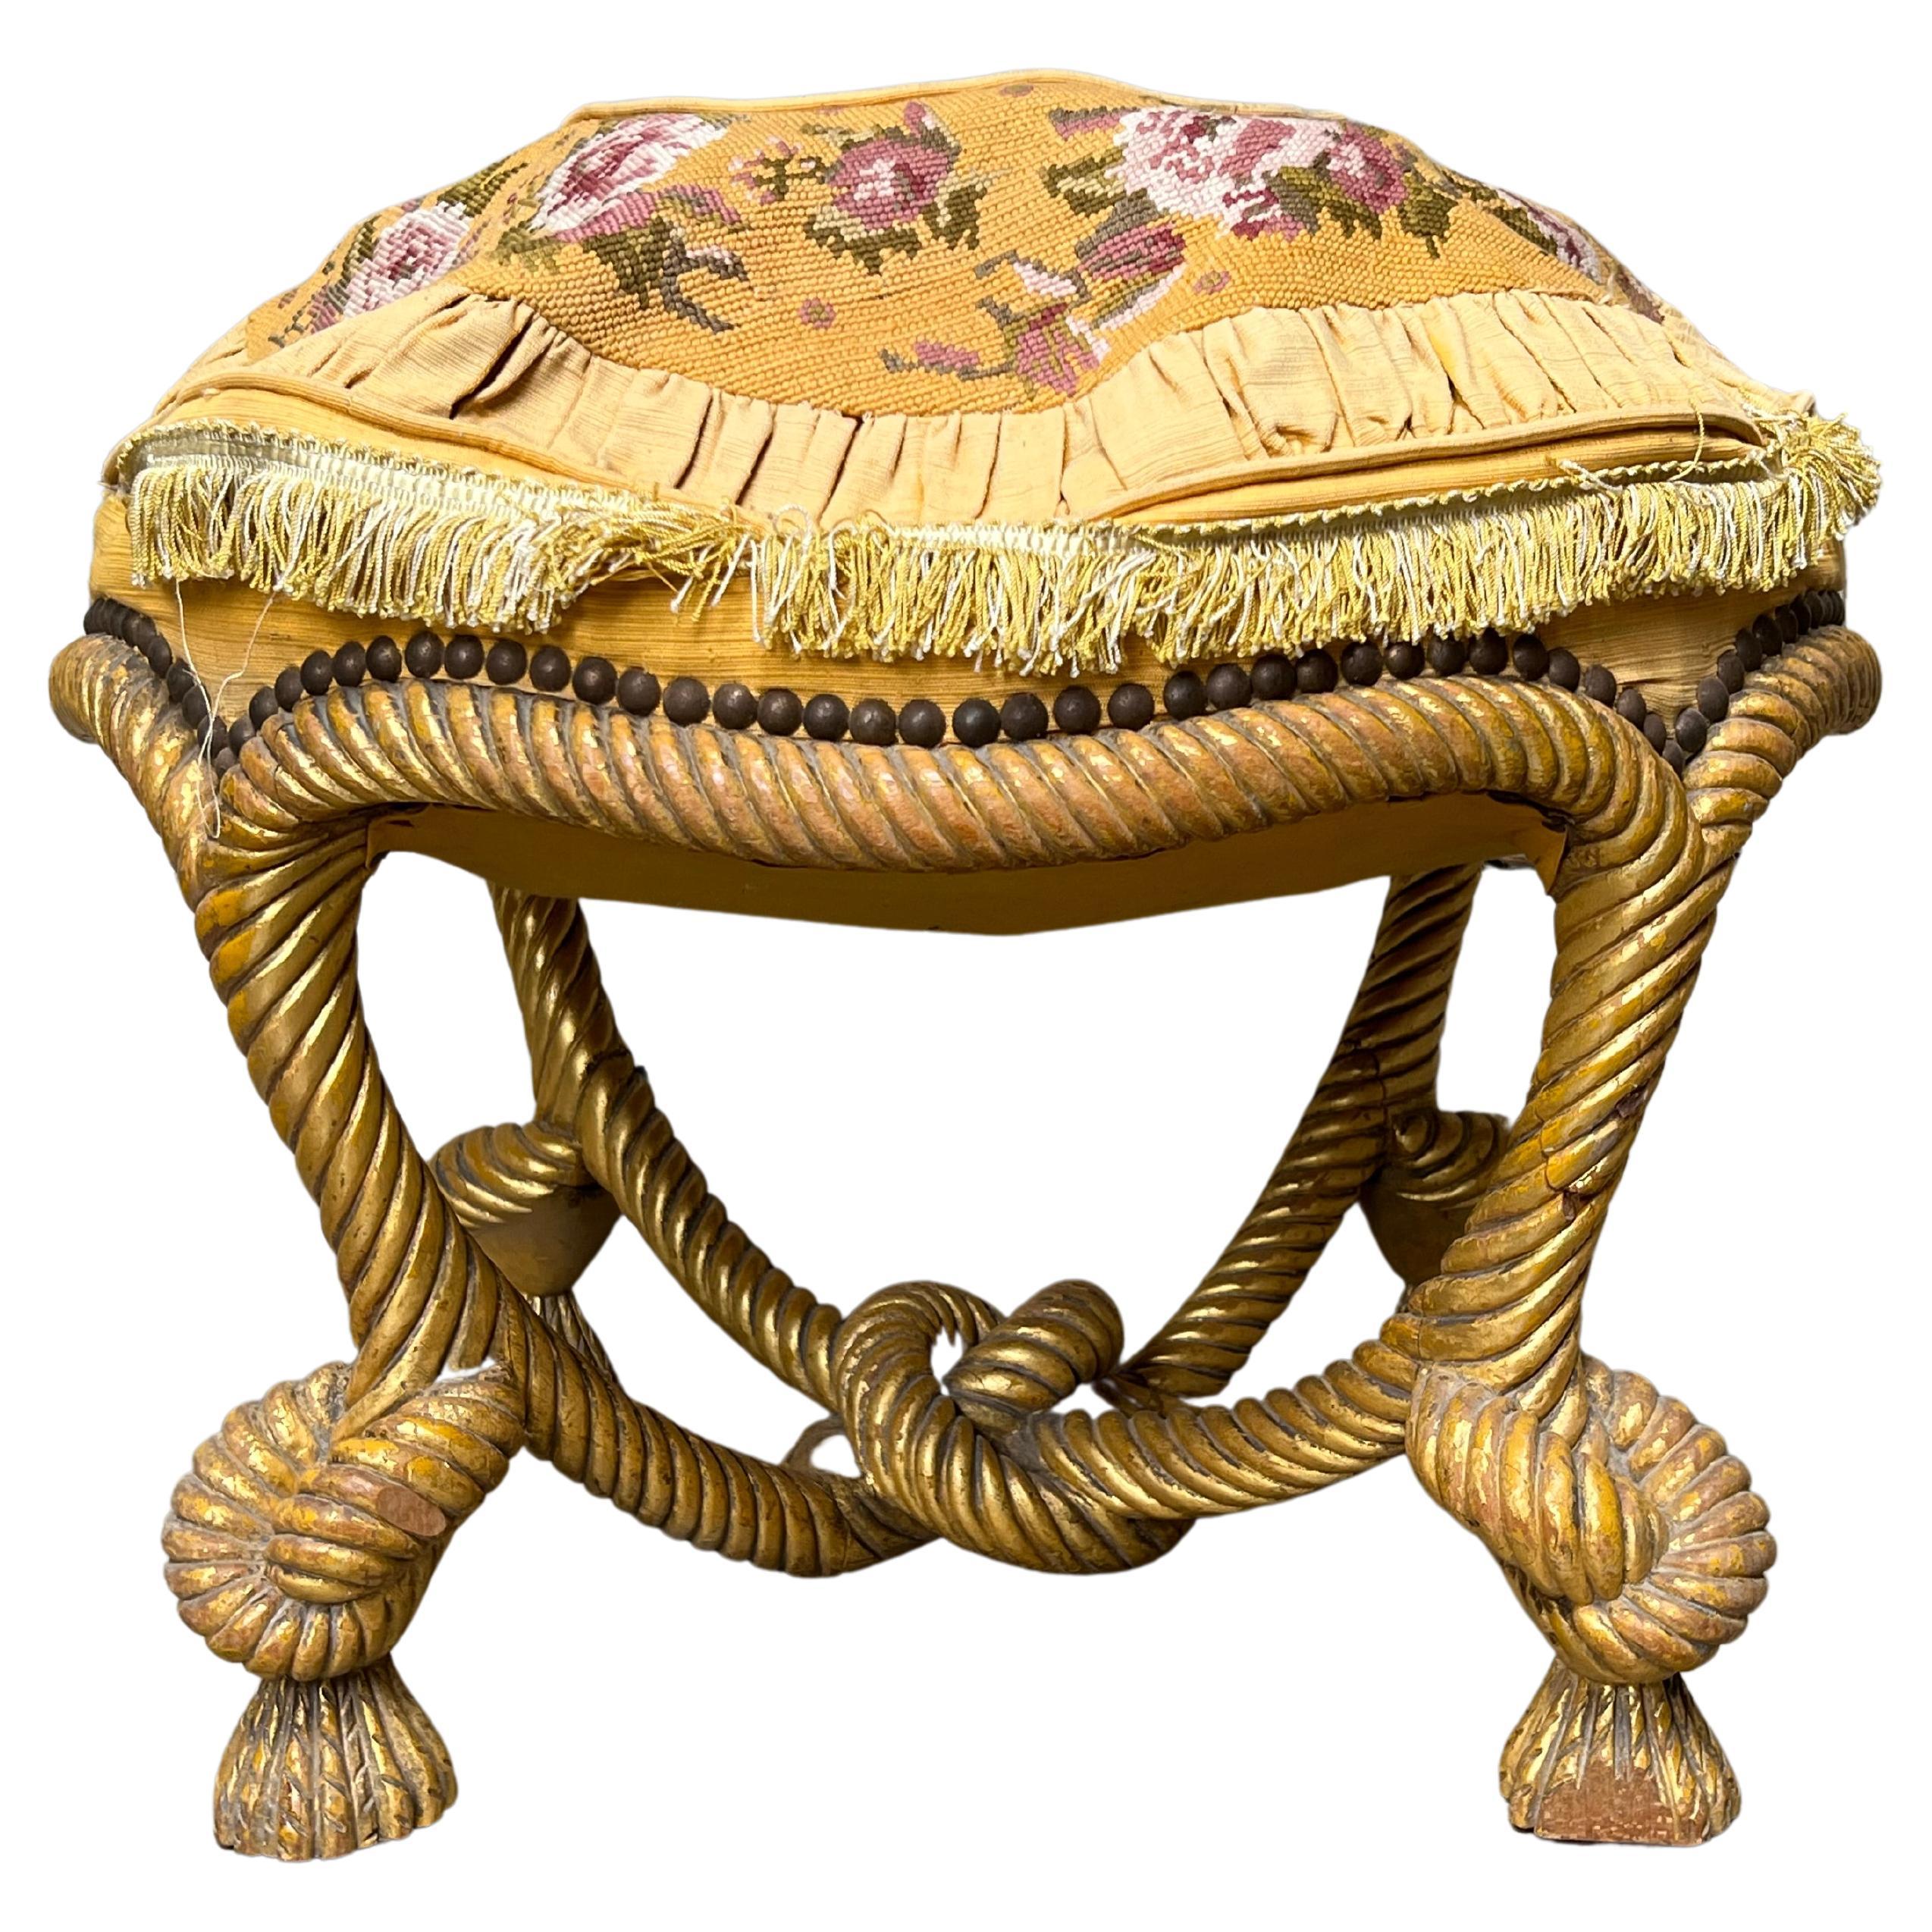 Pouf en corde française du 19ème siècle dans une finition dorée